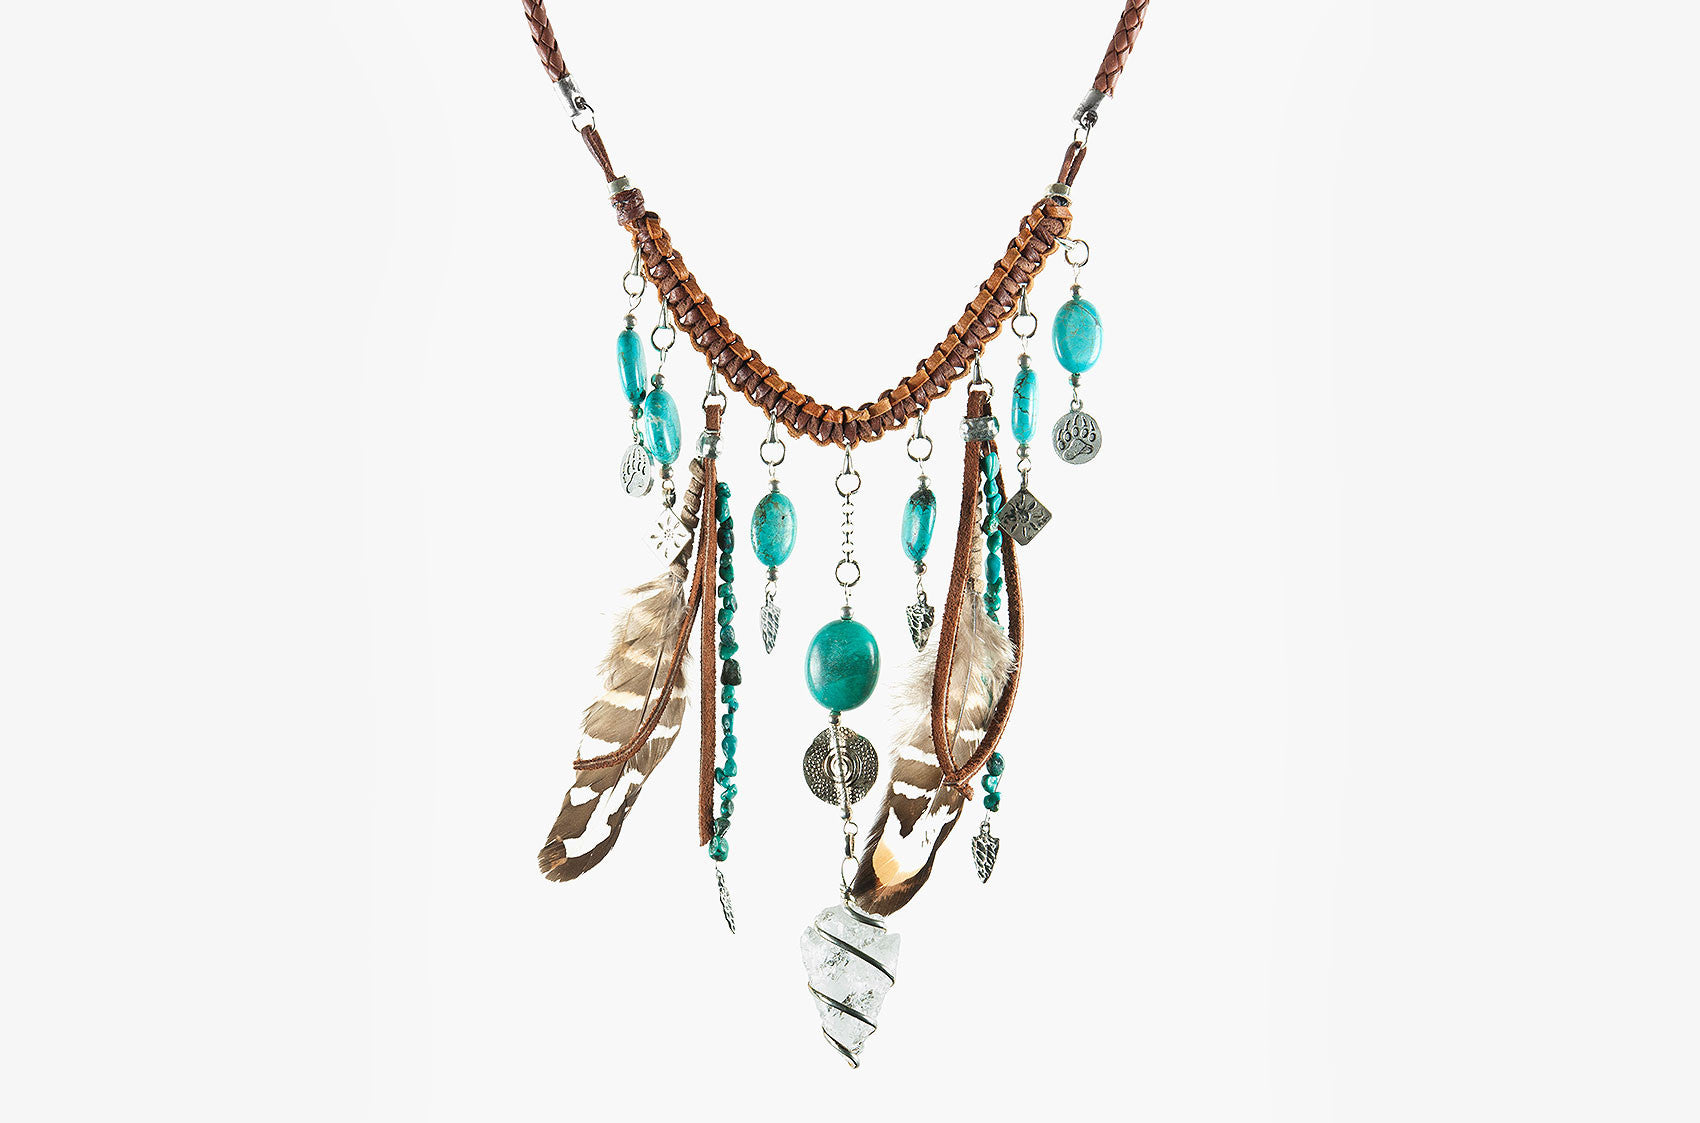 Buffalo Girl Wild Rider necklace